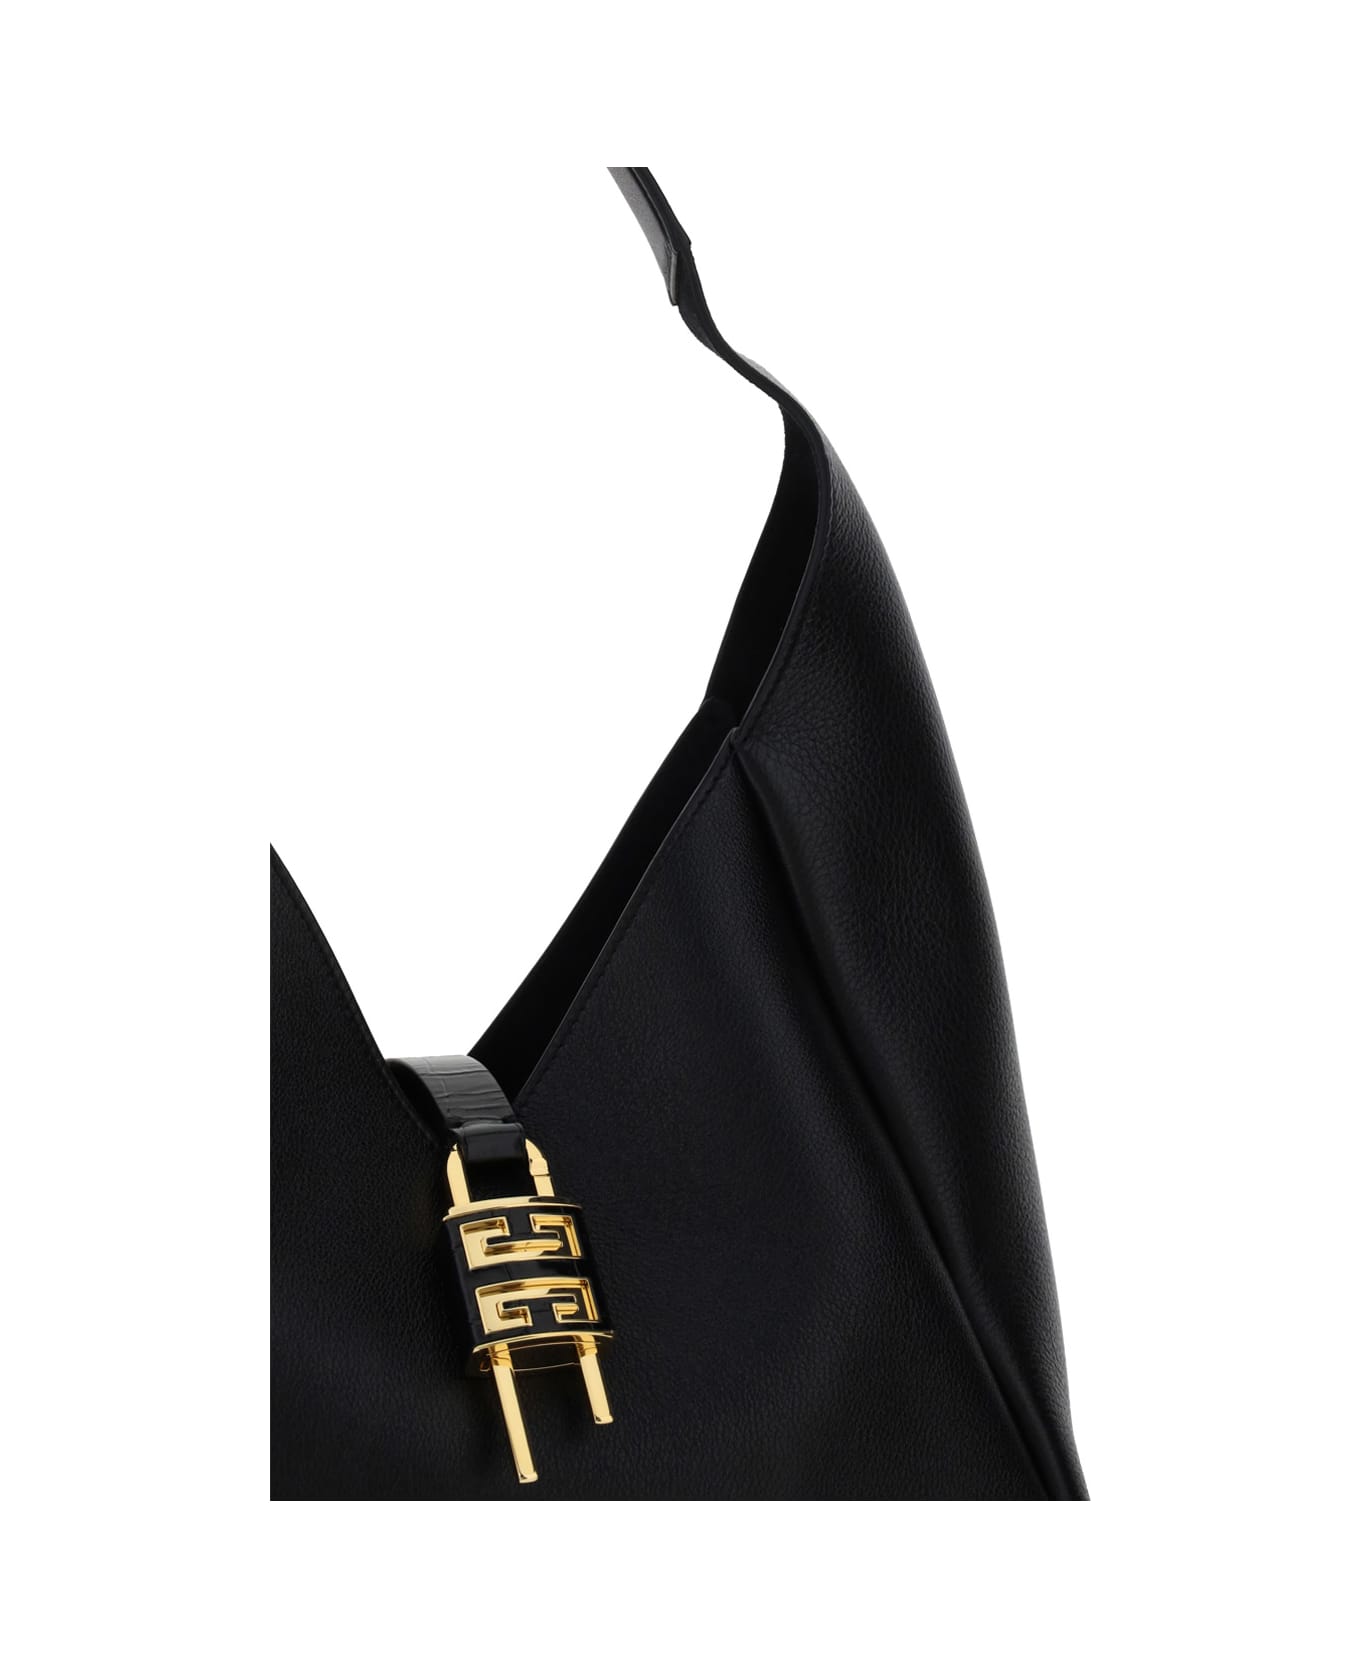 Givenchy G-hobo Shoulder Bag - Black トートバッグ